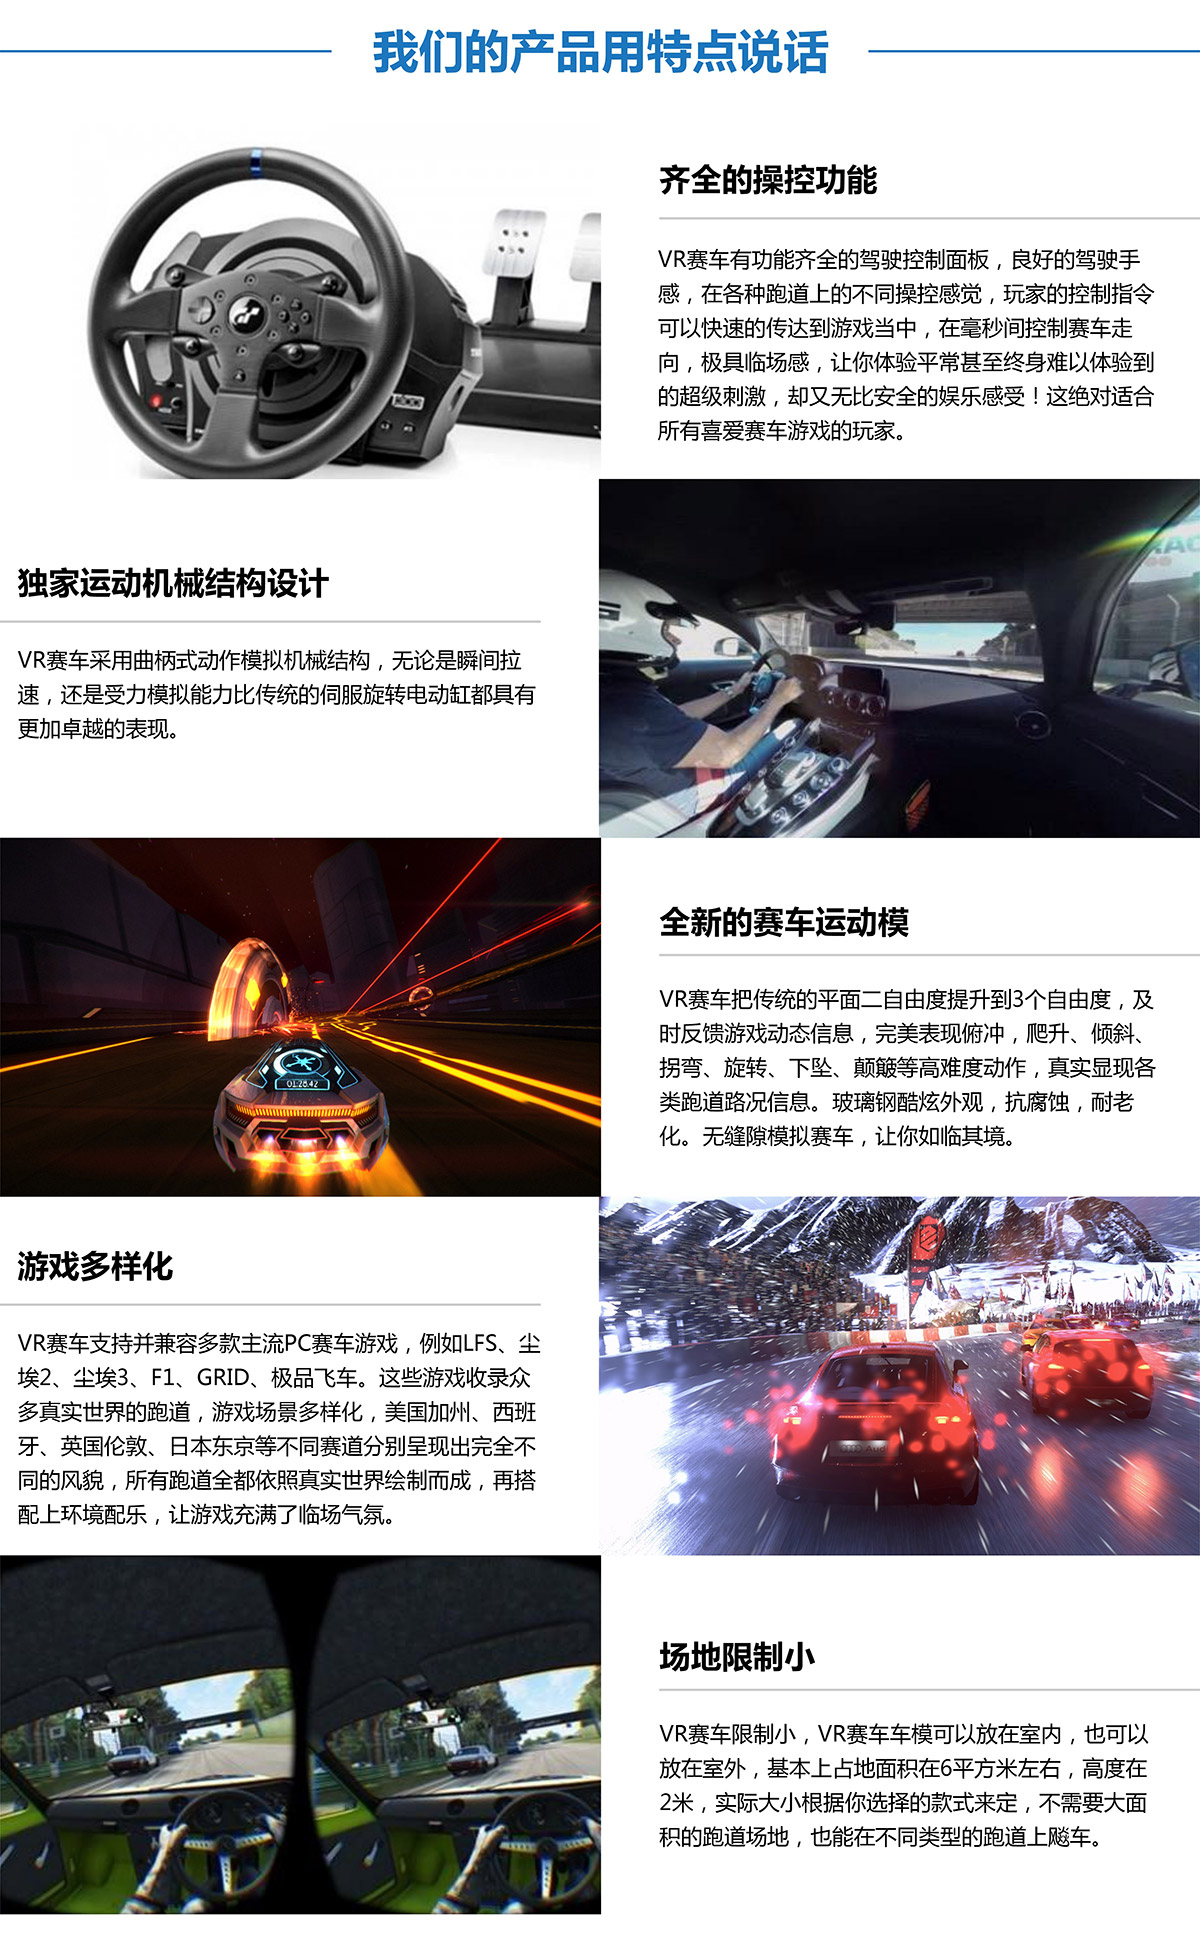 奇影幻境虚拟VR赛车产品用特点说话.jpg